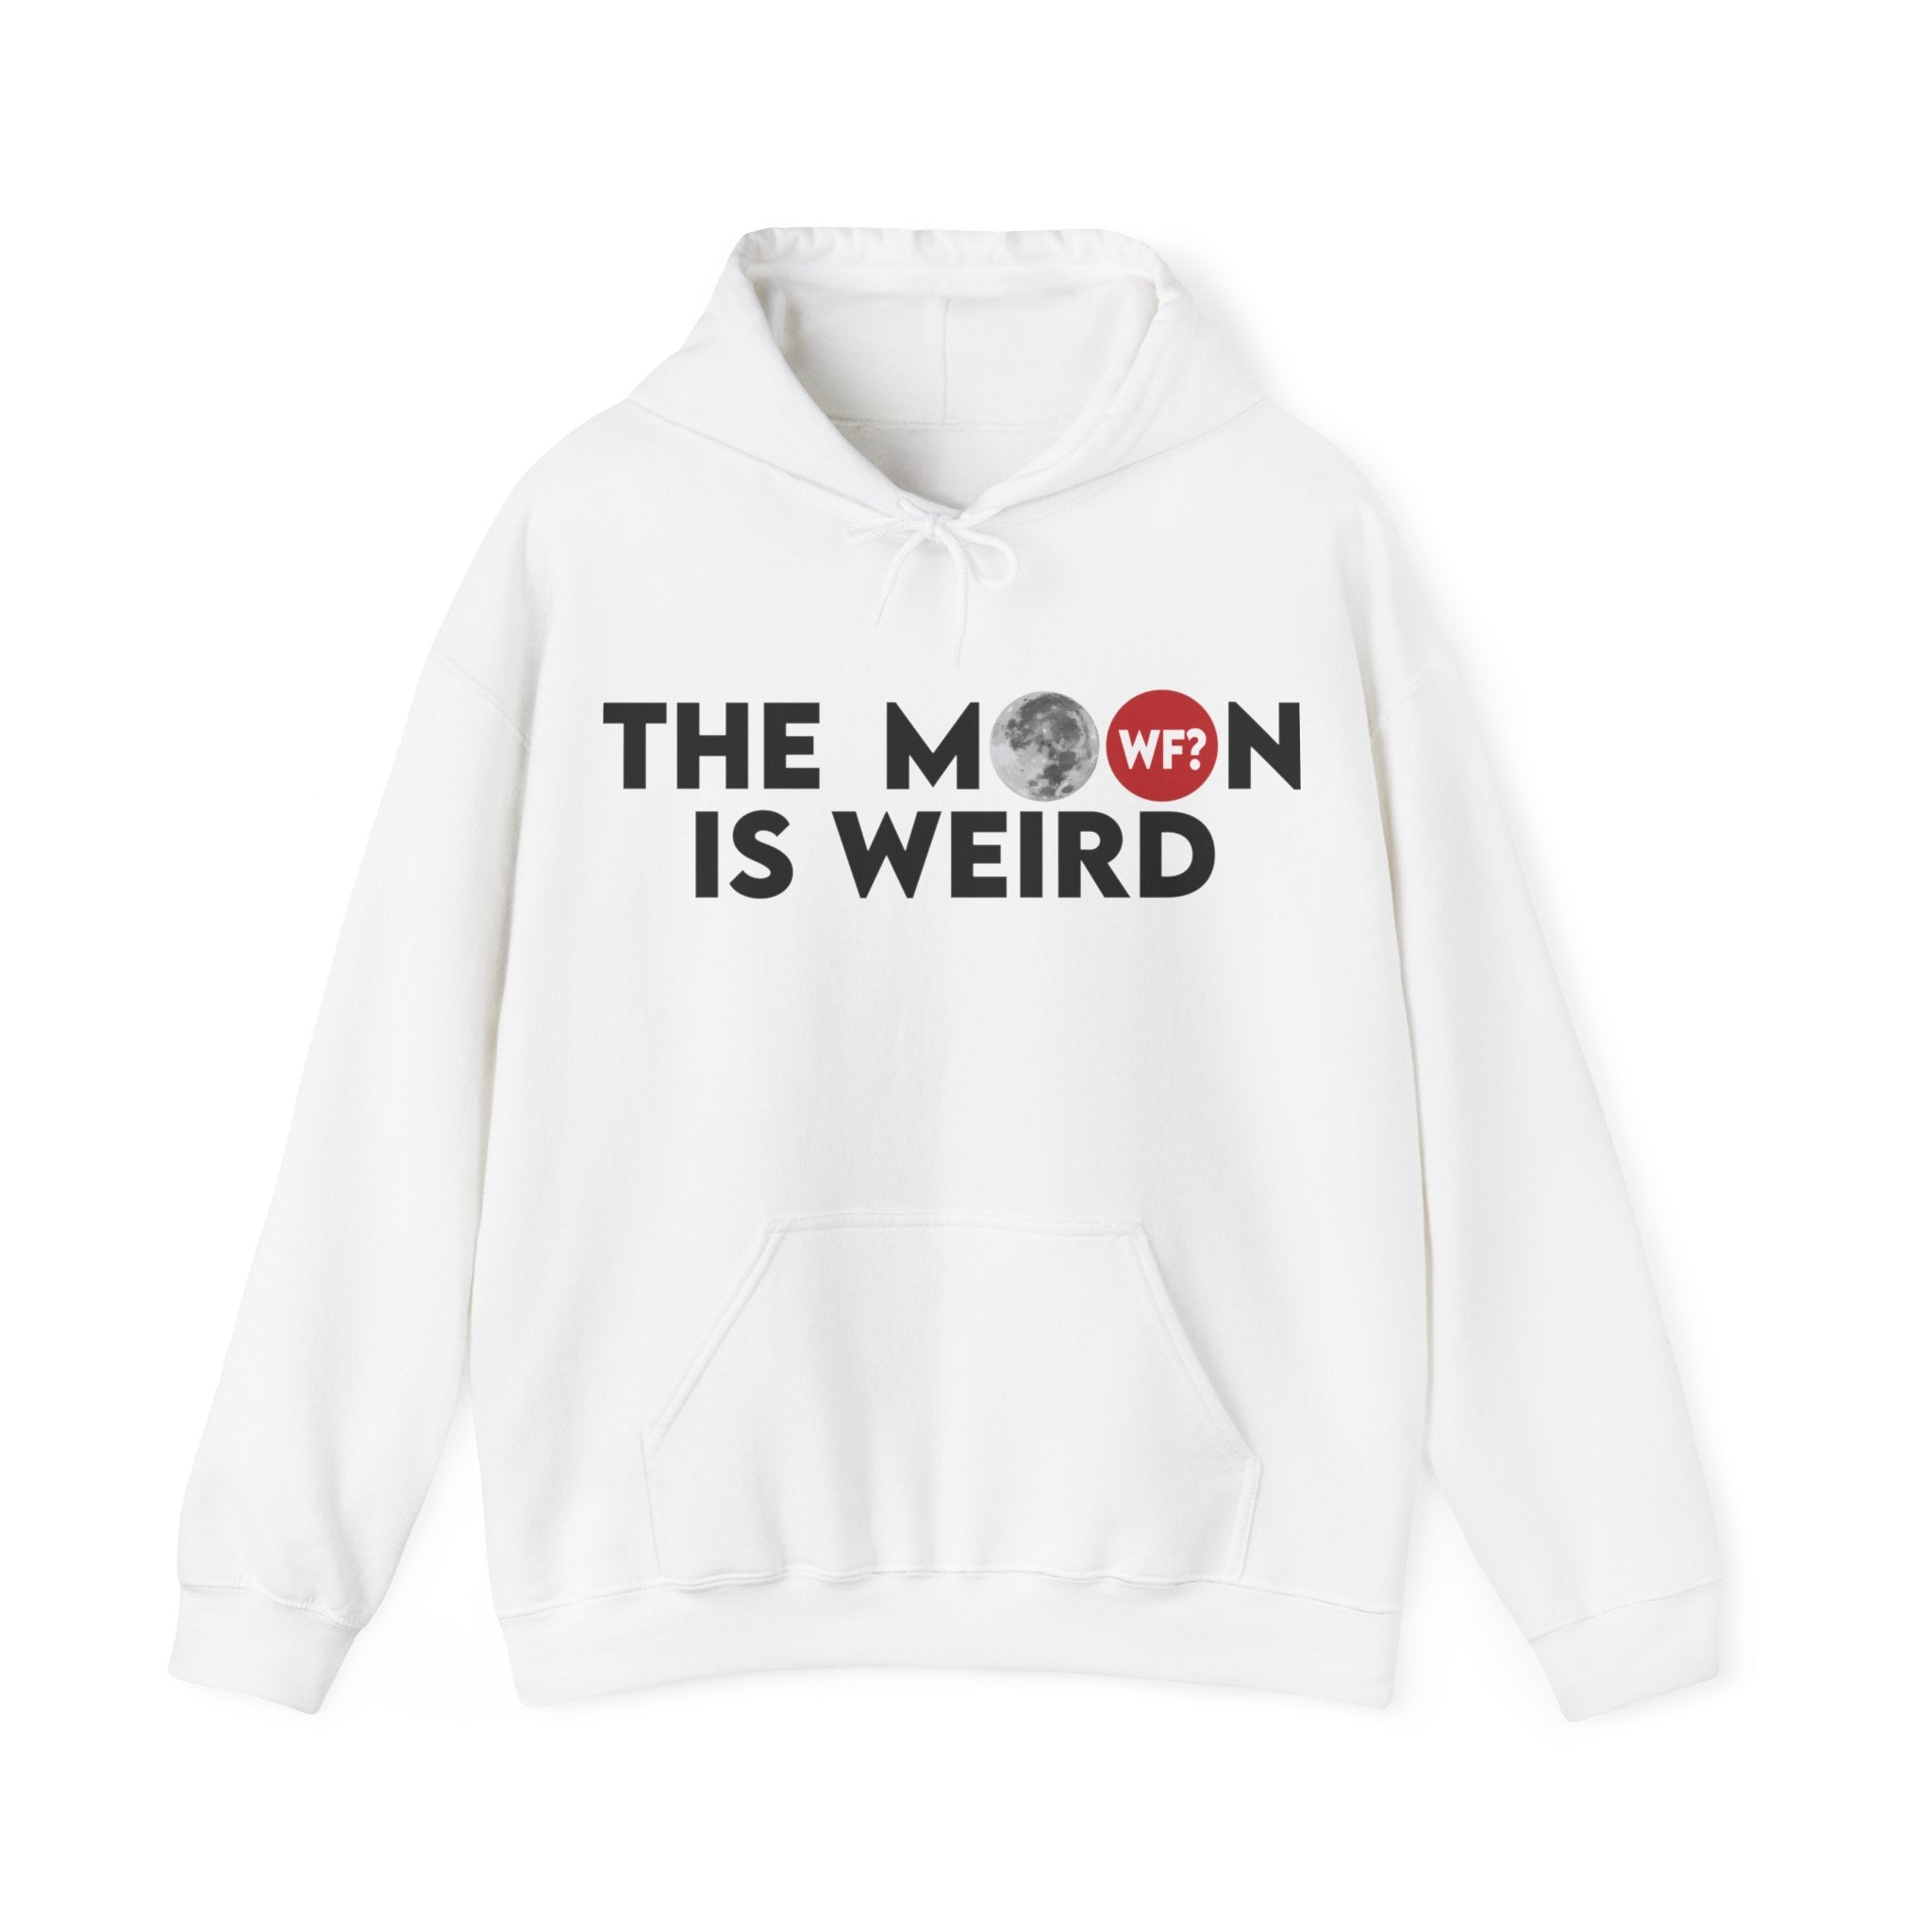 The Moon is Weird Hooded Sweatshirt